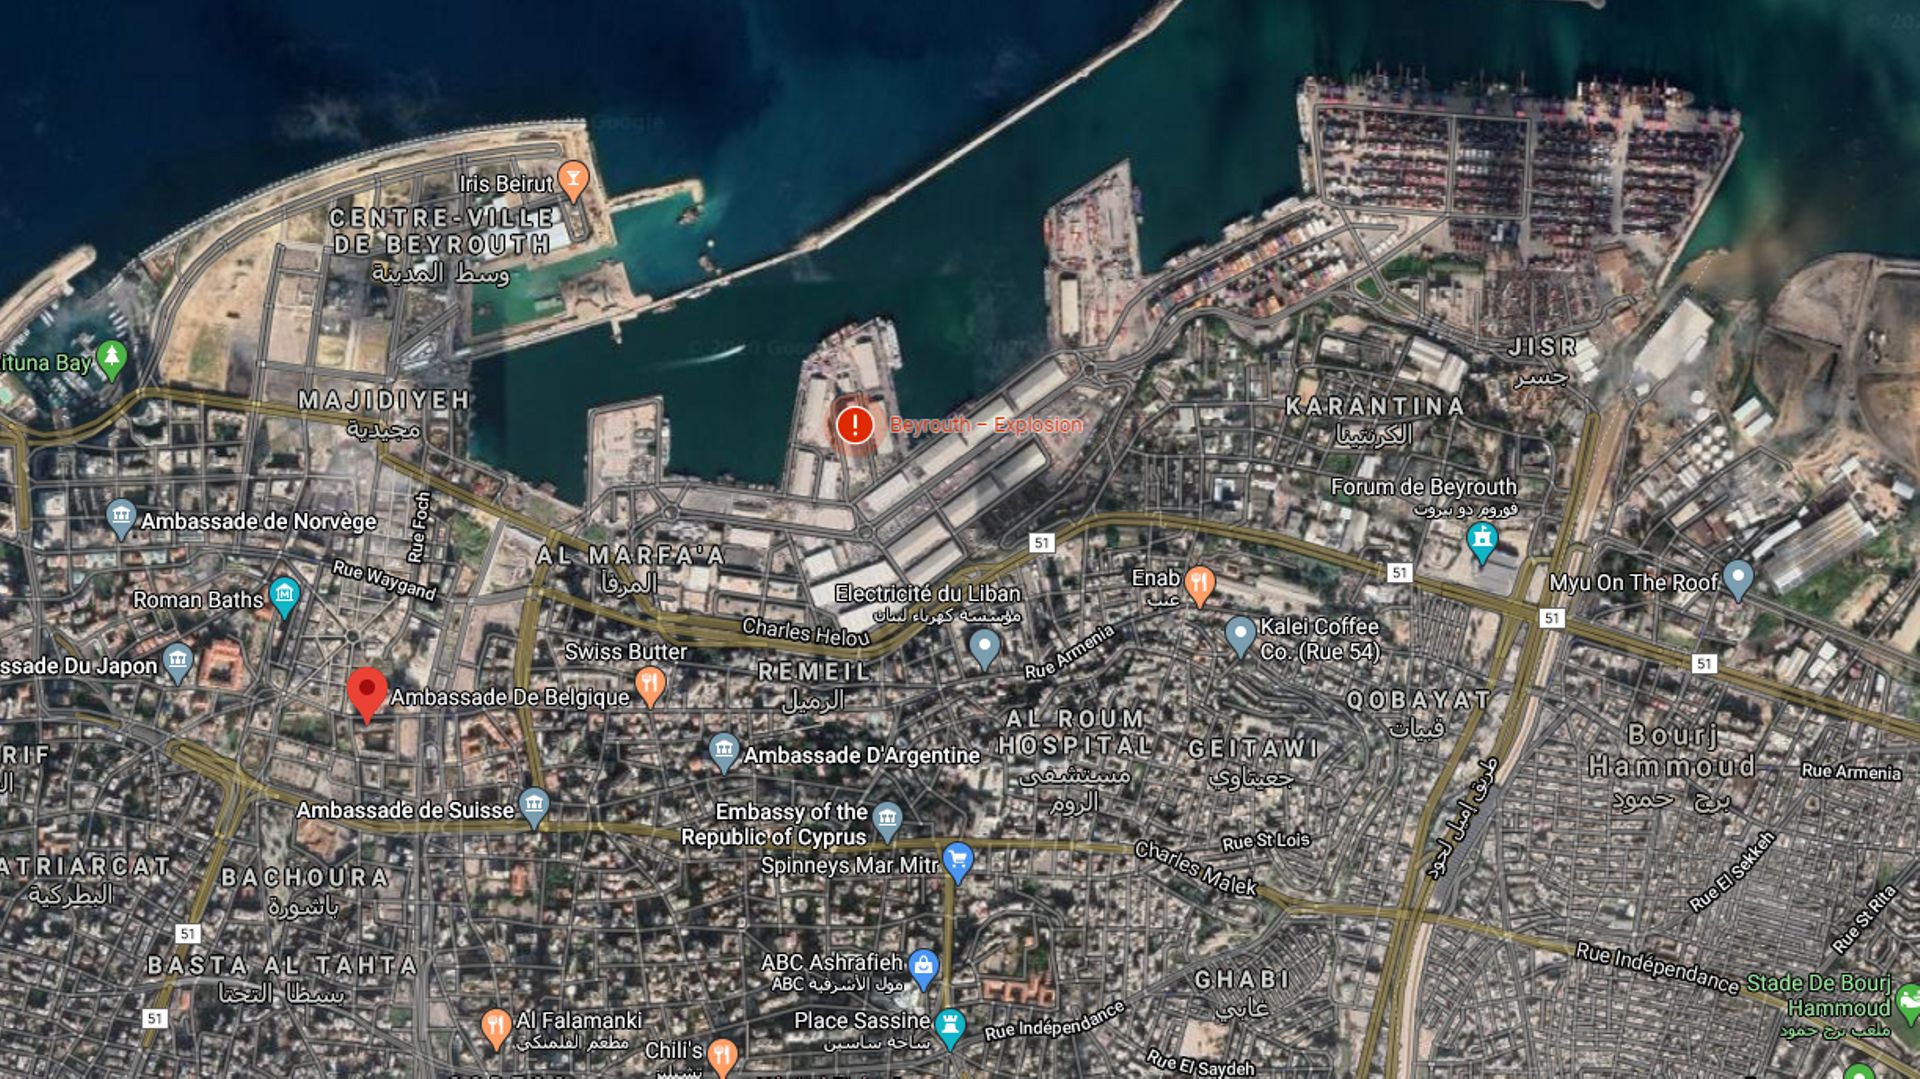 Sur ce plan de Beyrouth, on remarque la proximité du lieu de l’explosion et de l’ambassade de Belgique